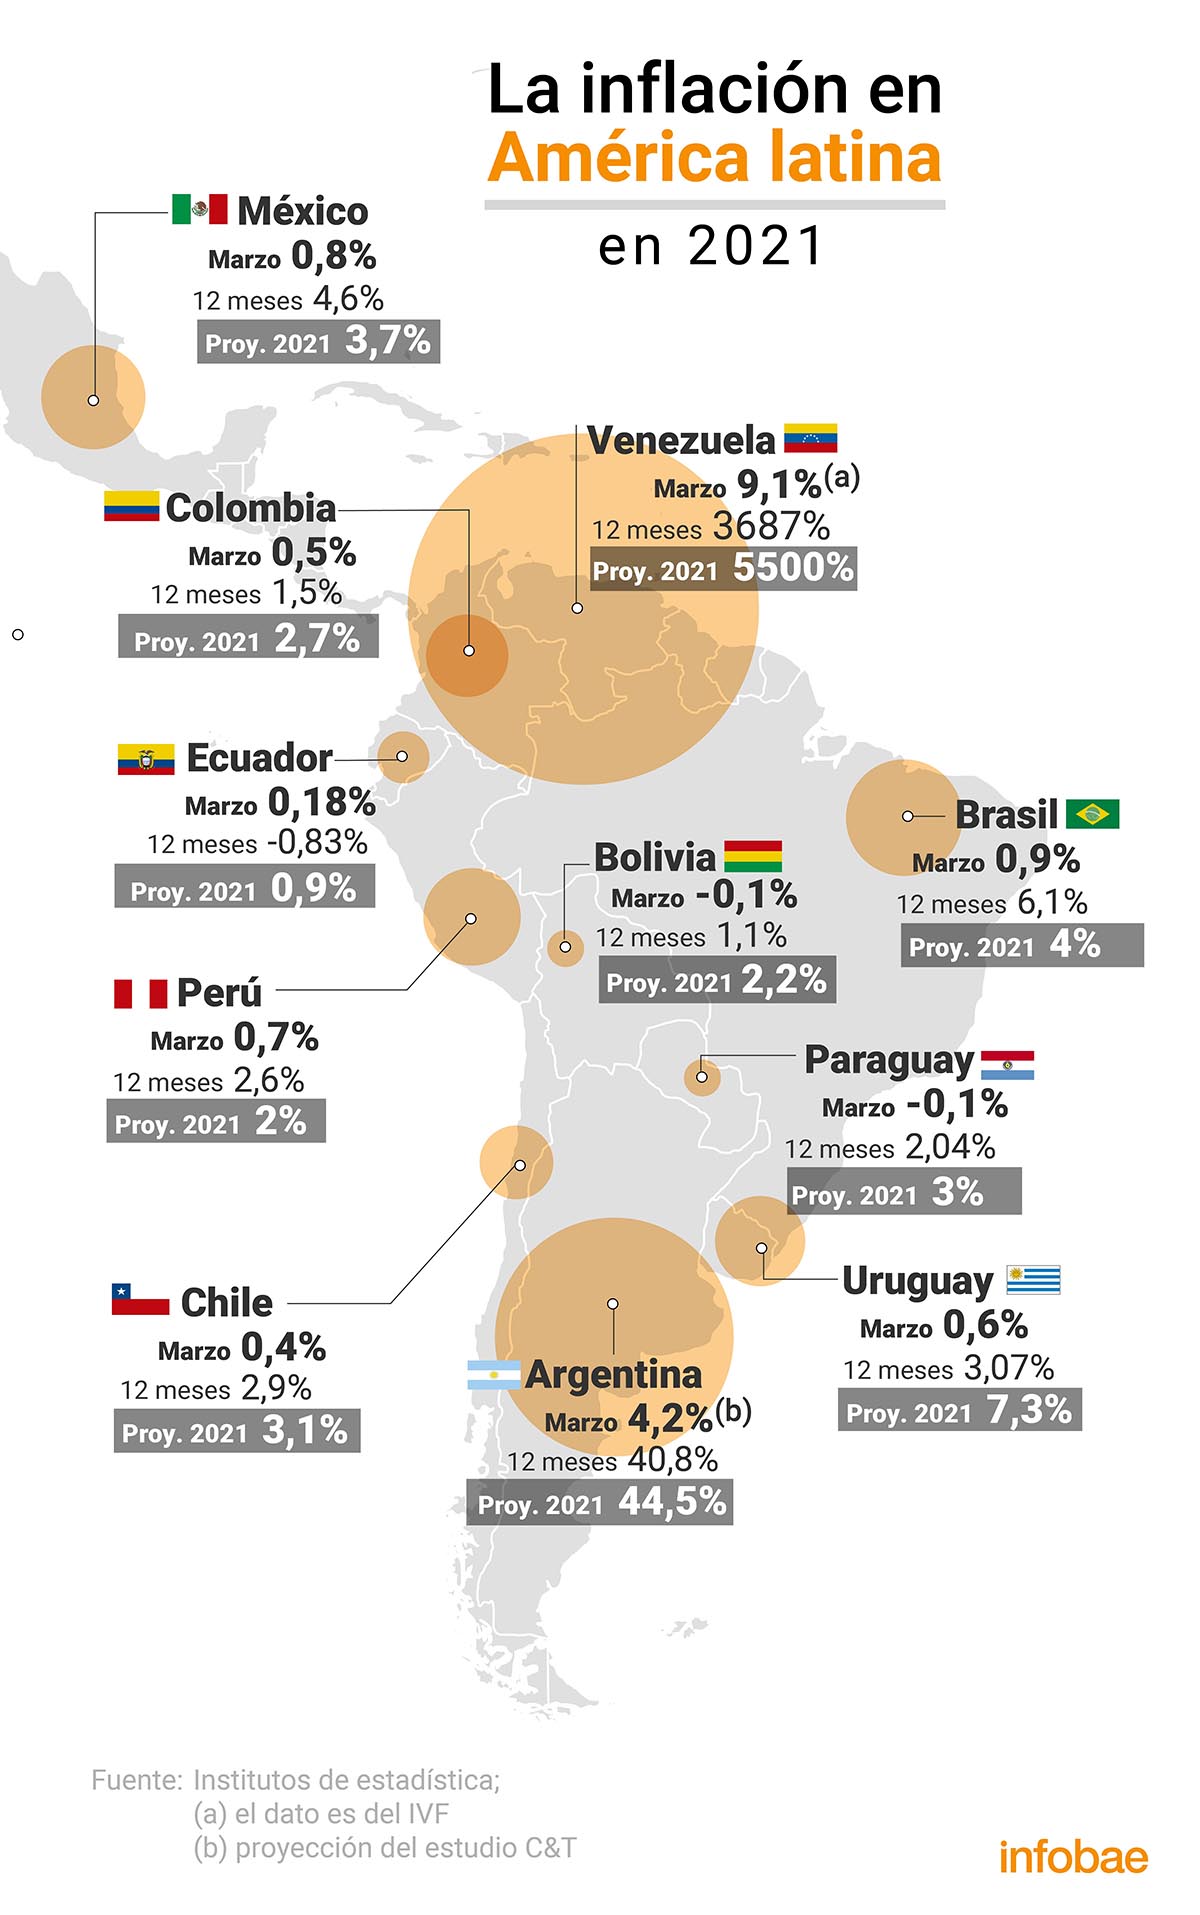 La inflación en América Latina en marzo
Infografía de Marcelo Regalado